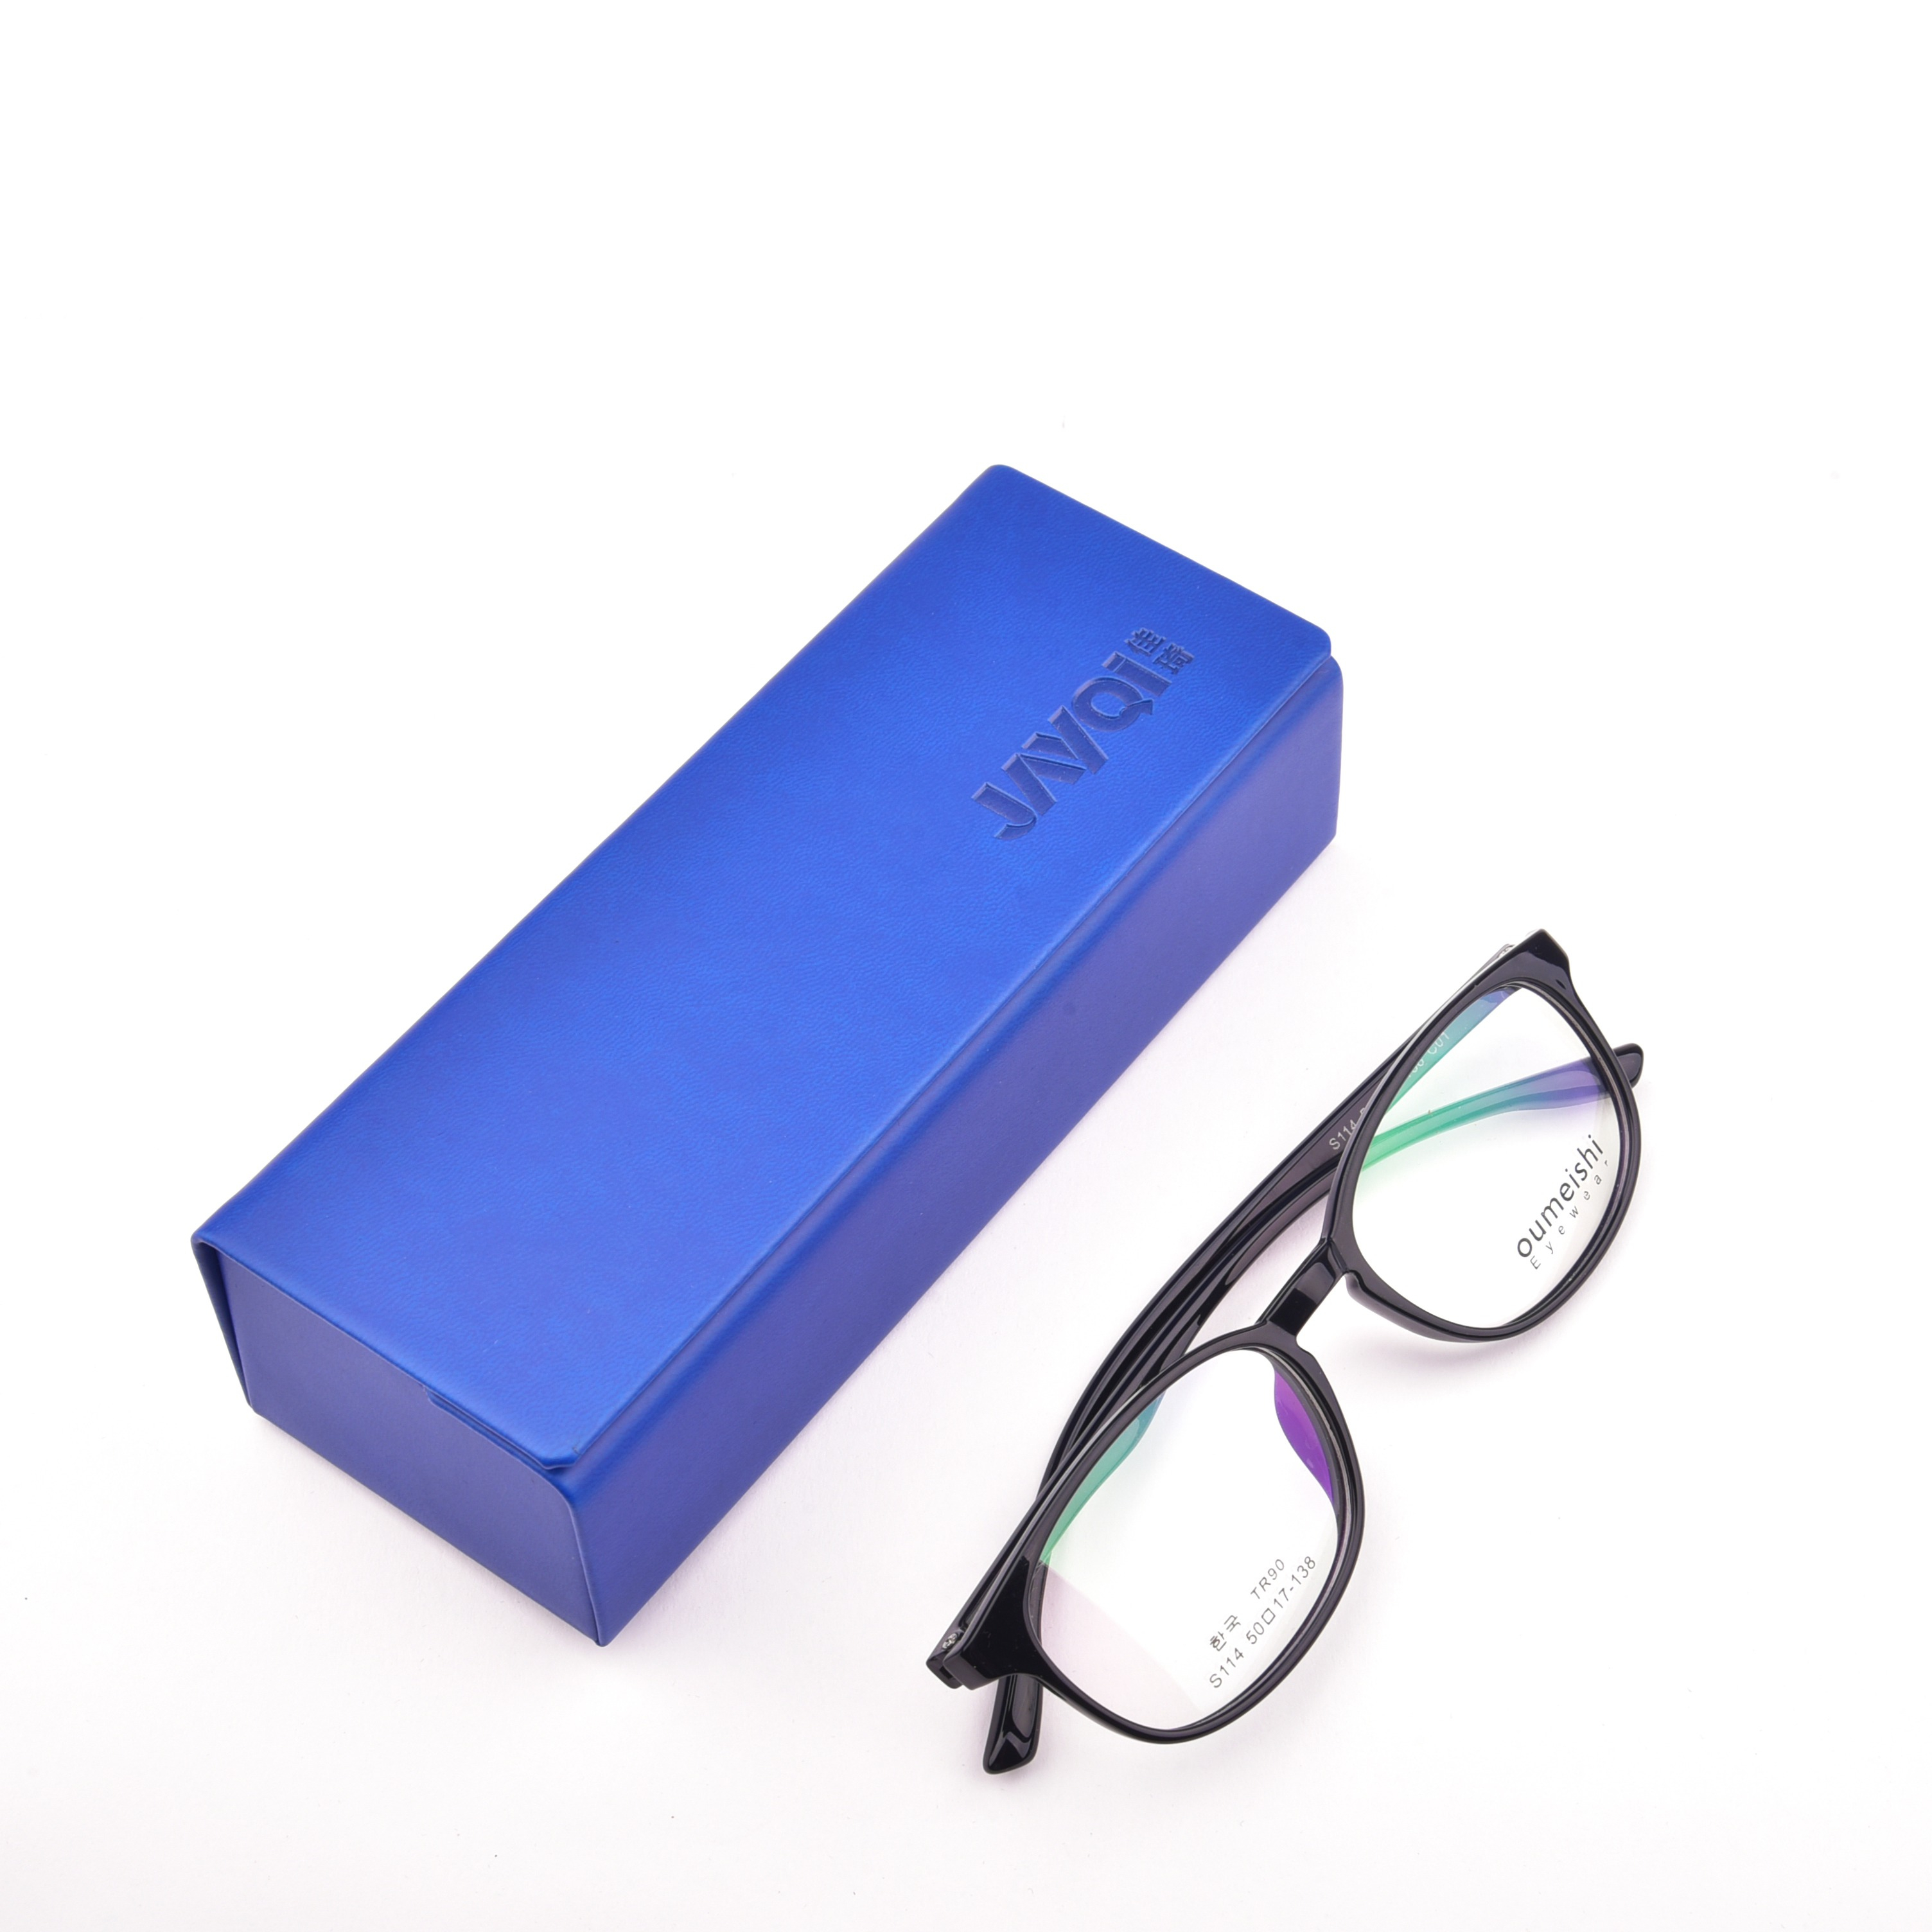 Low Moq Factory Price Eyeglasses Case Packing Box